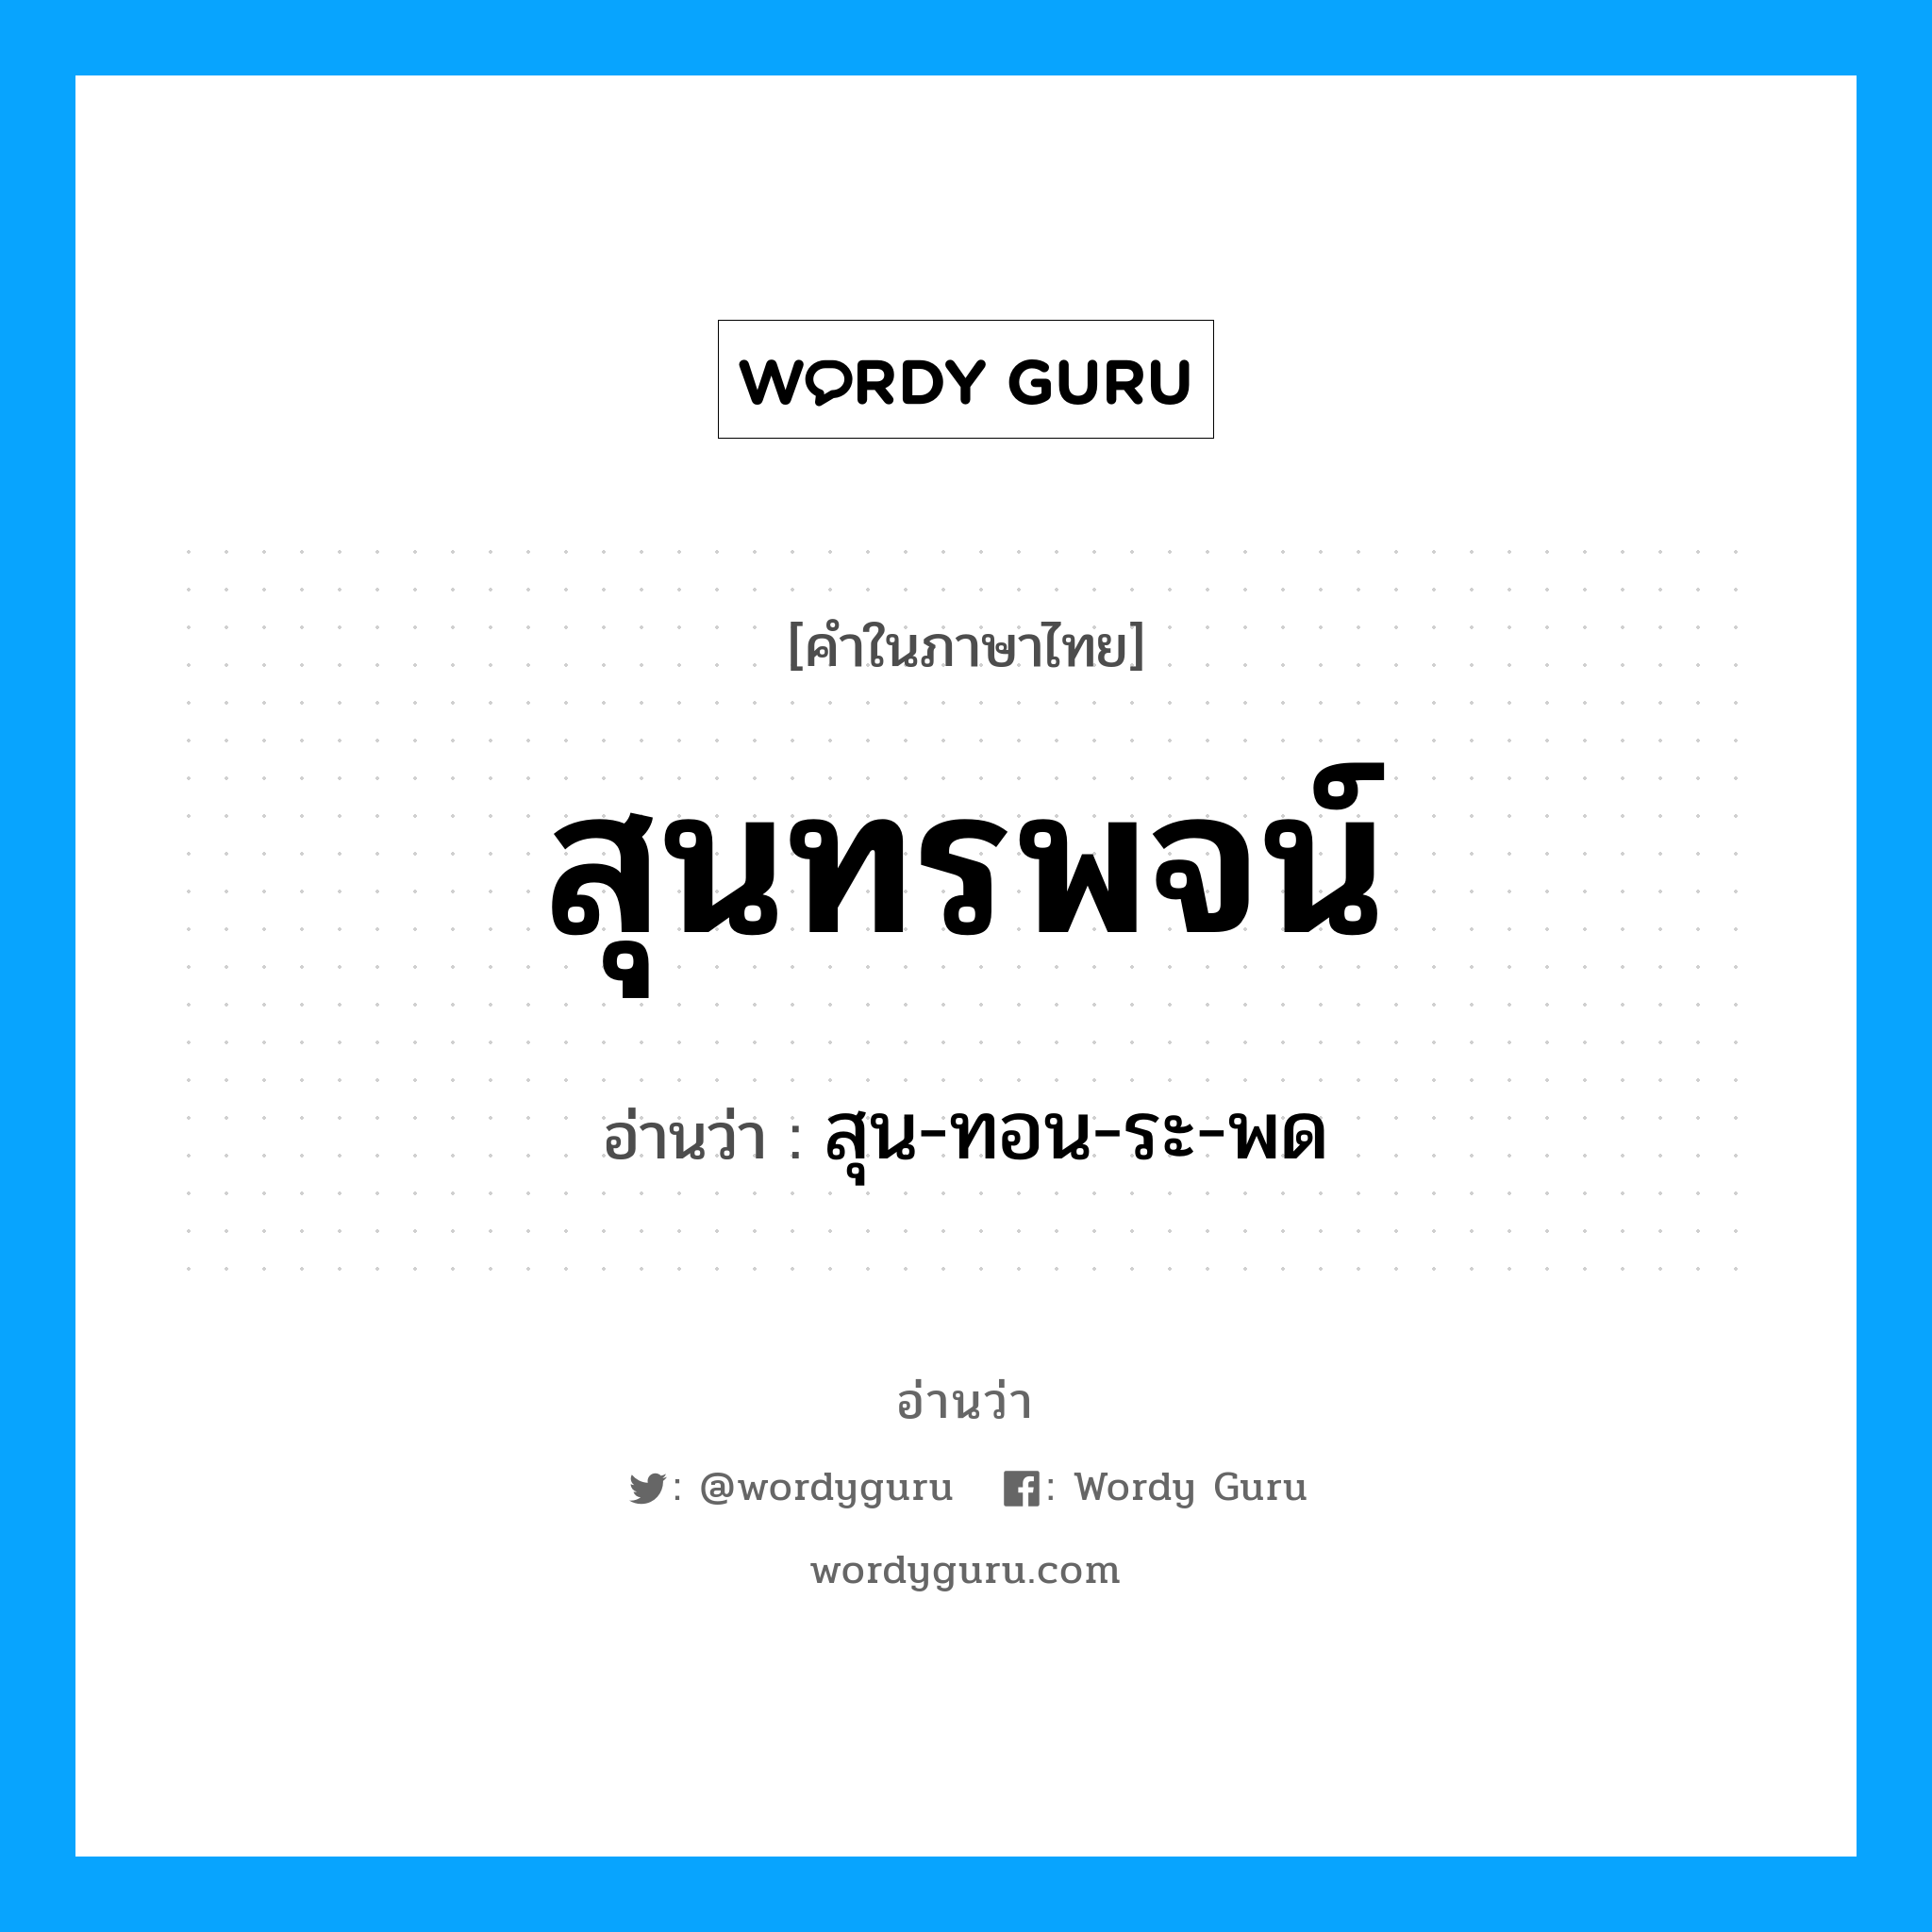 สุน-ทอน-ระ-พด เป็นคำอ่านของคำไหน?, คำในภาษาไทย สุน-ทอน-ระ-พด อ่านว่า สุนทรพจน์